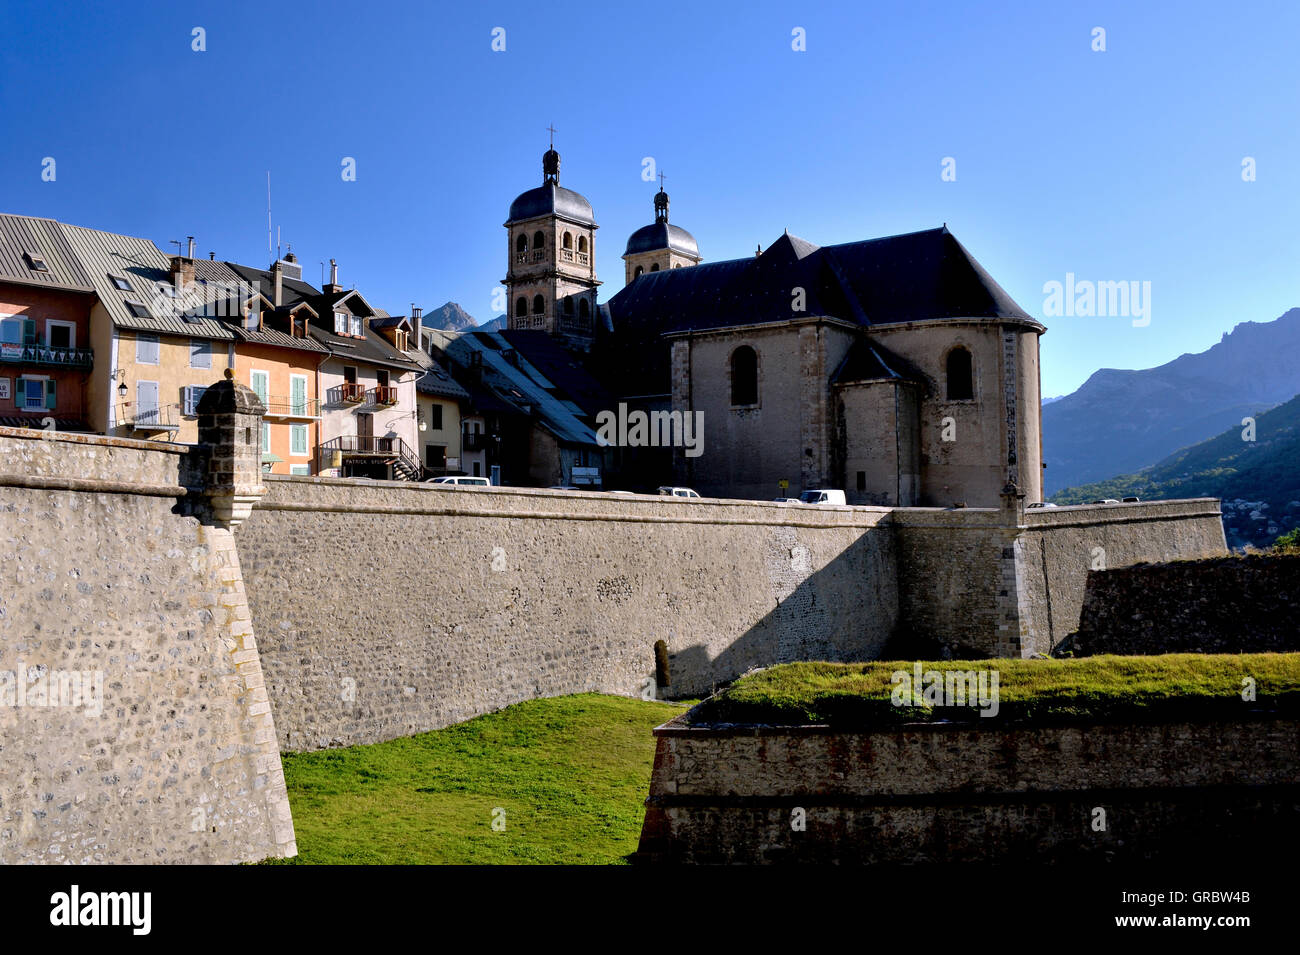 Briancon, Stadtmauer und Kirche, historische wichtige Stadt In den Bergen, die höchstgelegene Stadt Europas, Französische Alpen, Frankreich Stockfoto